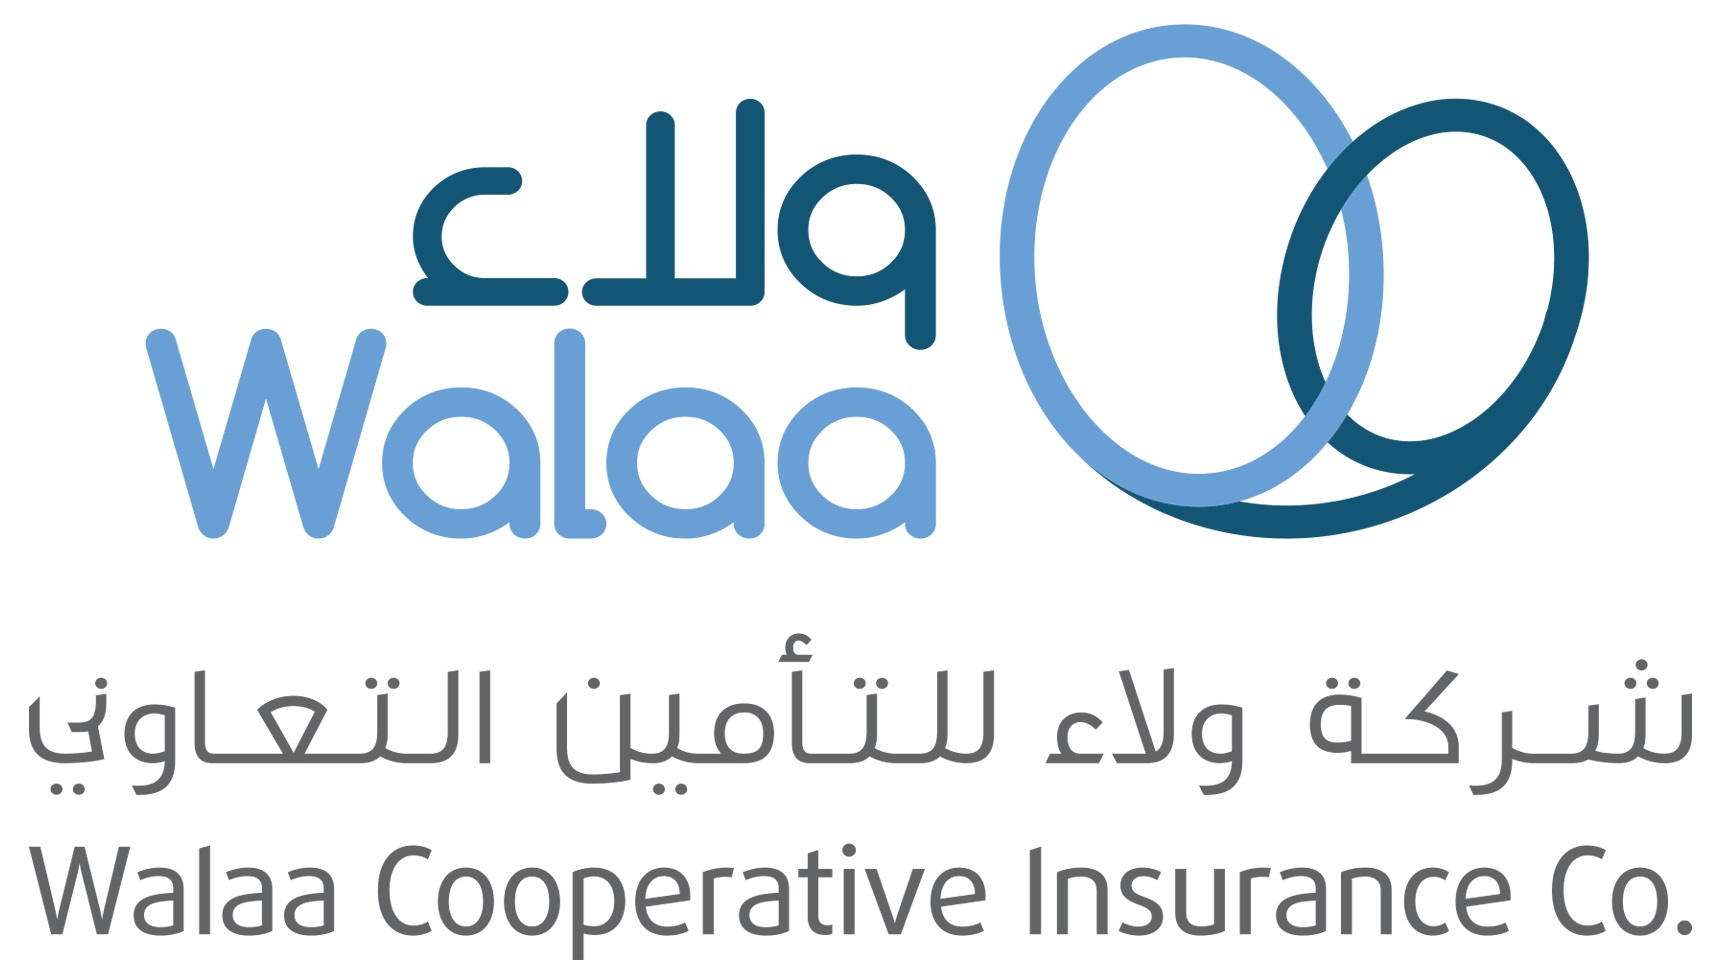 السعودية | تعليق تداول سهم “ولاء للتأمين” بناءً على طلب الشركة